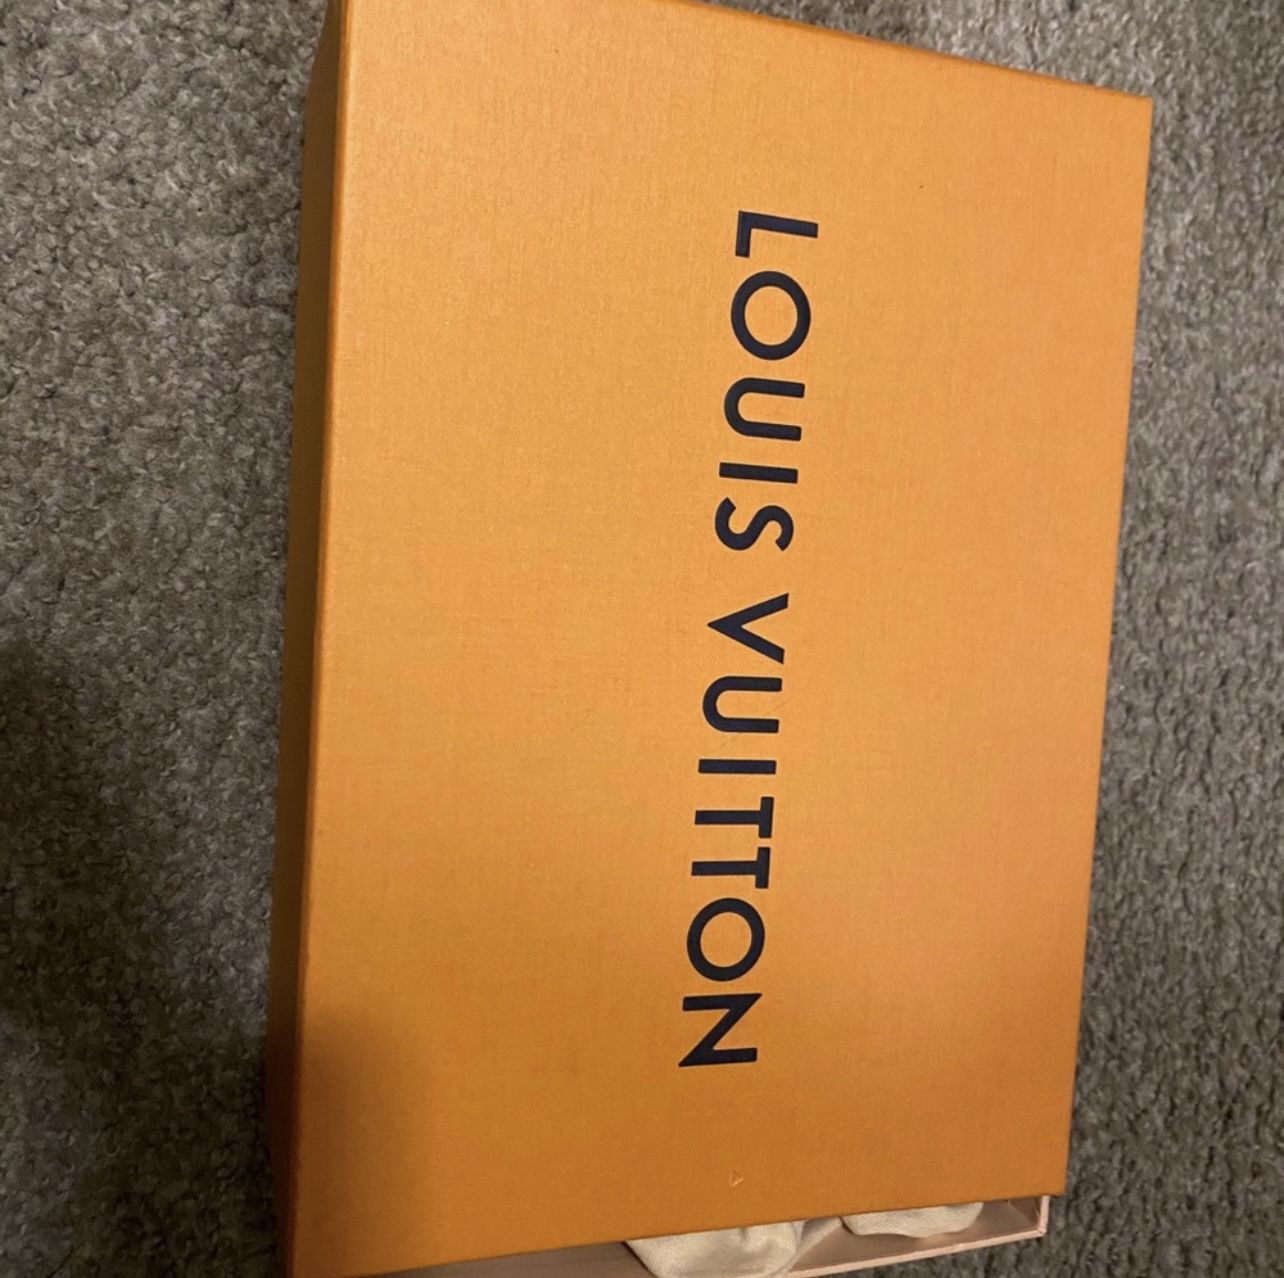 Louis Vuitton FW18 SAMPLE White Snakeskin Sneakers – Ākaibu Store